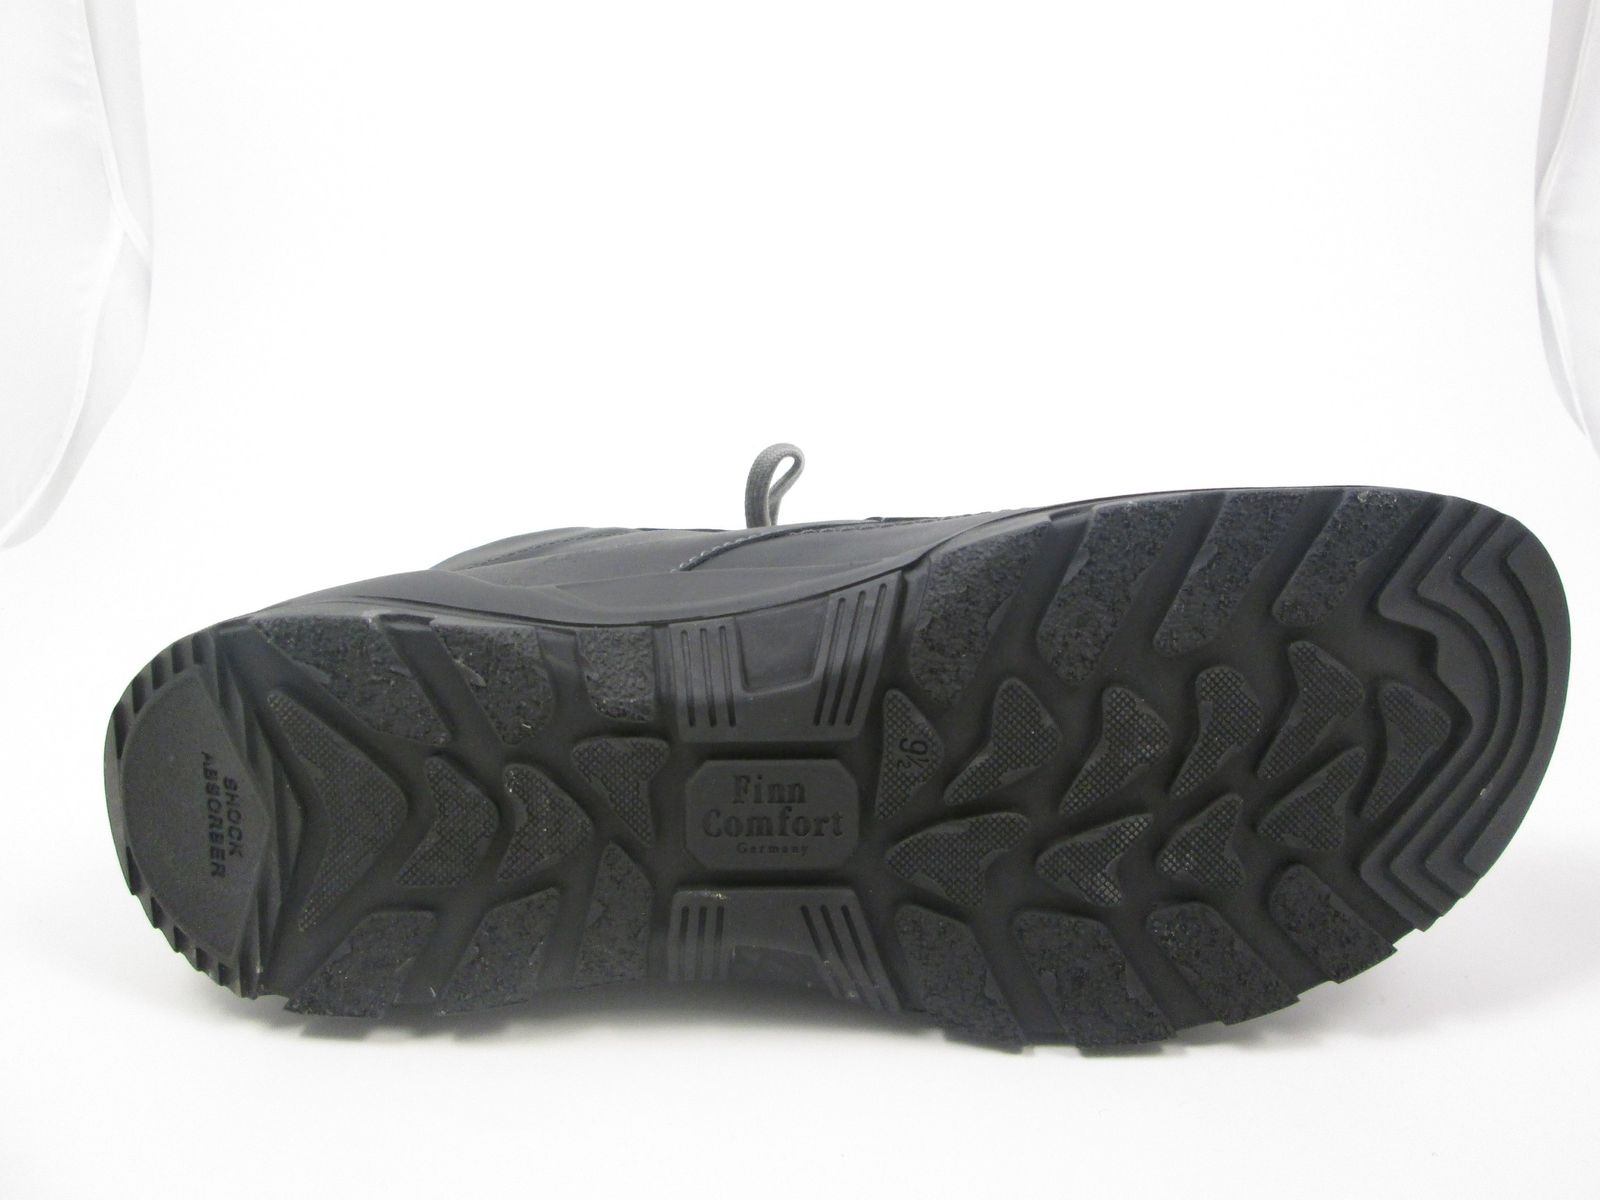 Schuh von Finn Comfort, 9